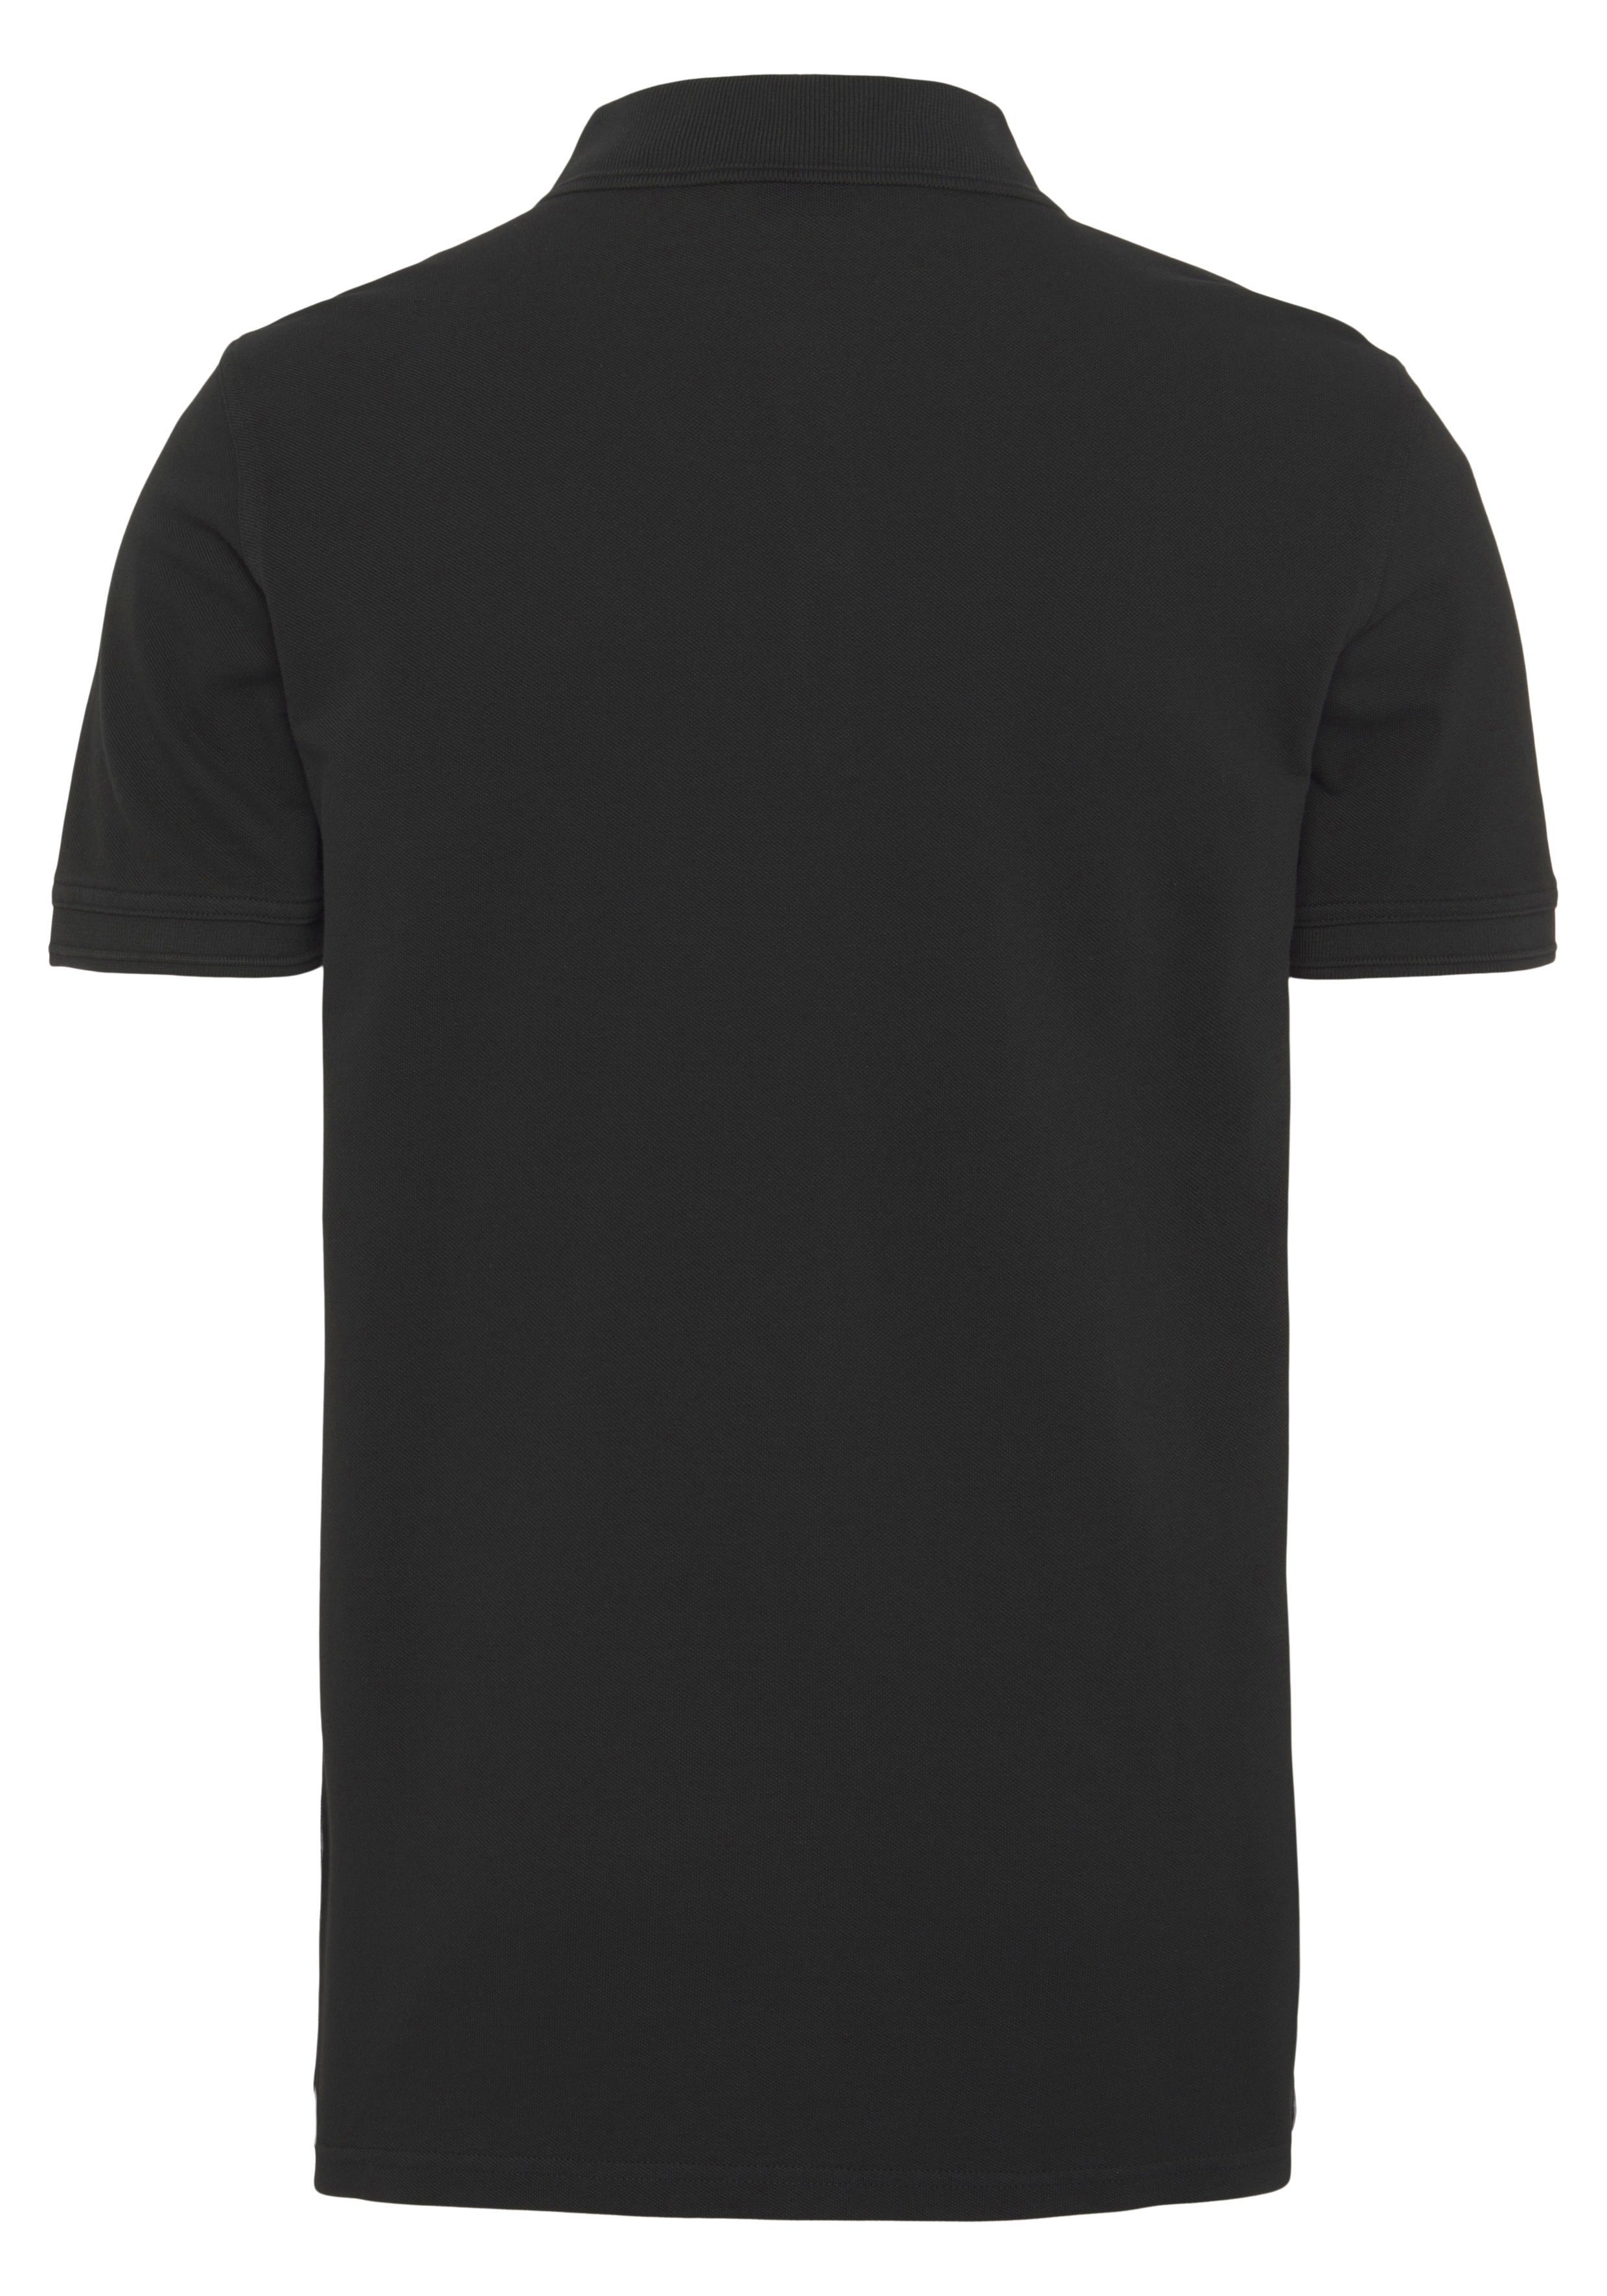 Prime BOSS Logoschriftzug auf Black ORANGE der Poloshirt dezentem 01 mit 10203439 Brust